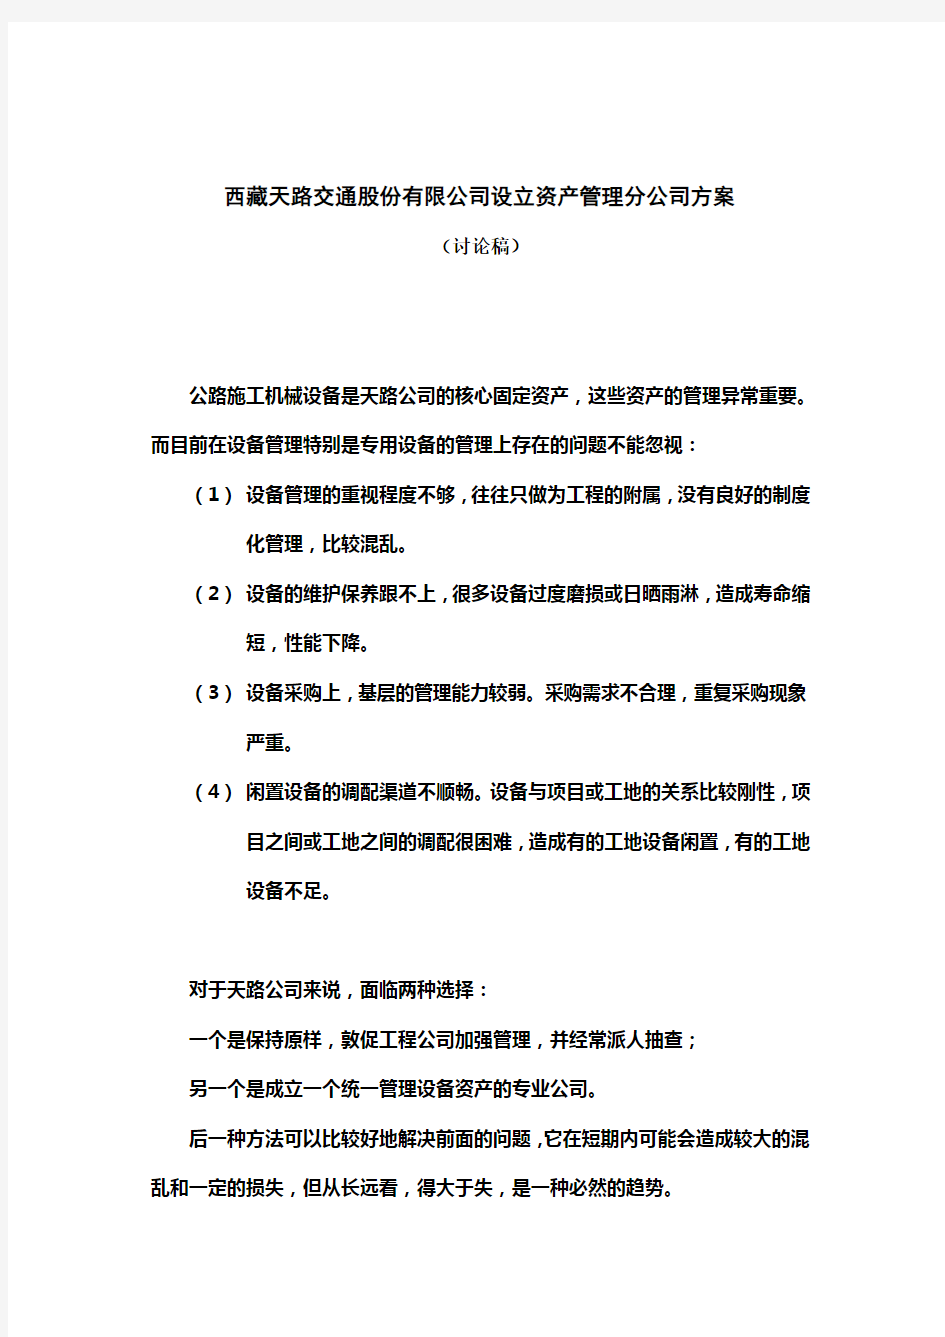 西藏某公司设立资产管理分公司方案(doc 6页)